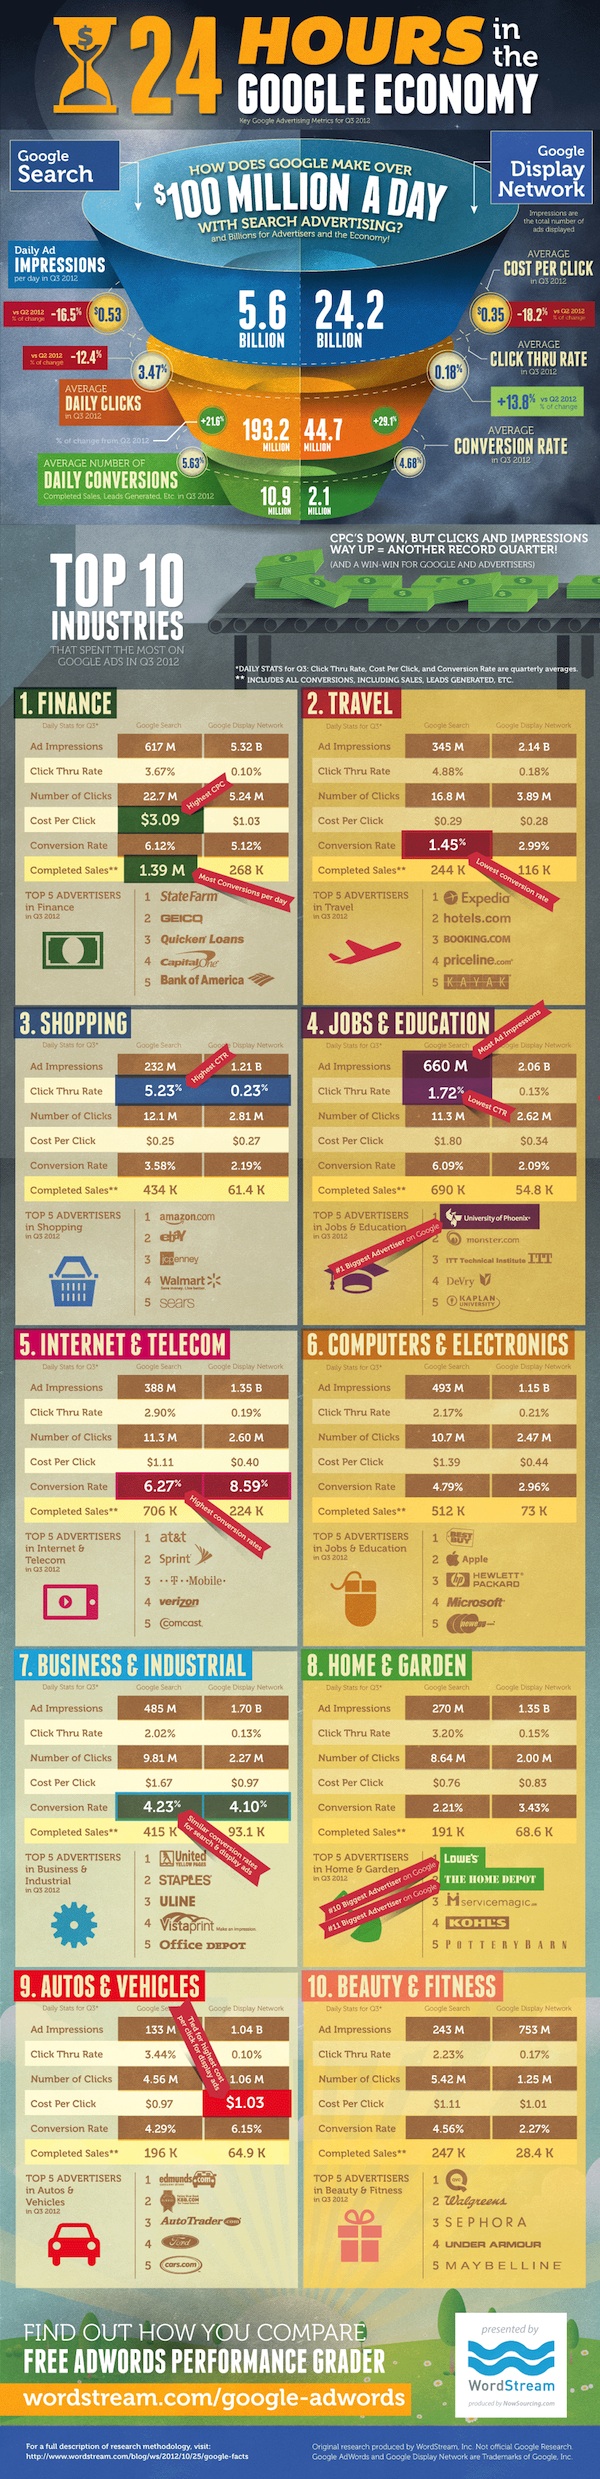 google-economy-infographic.jpg